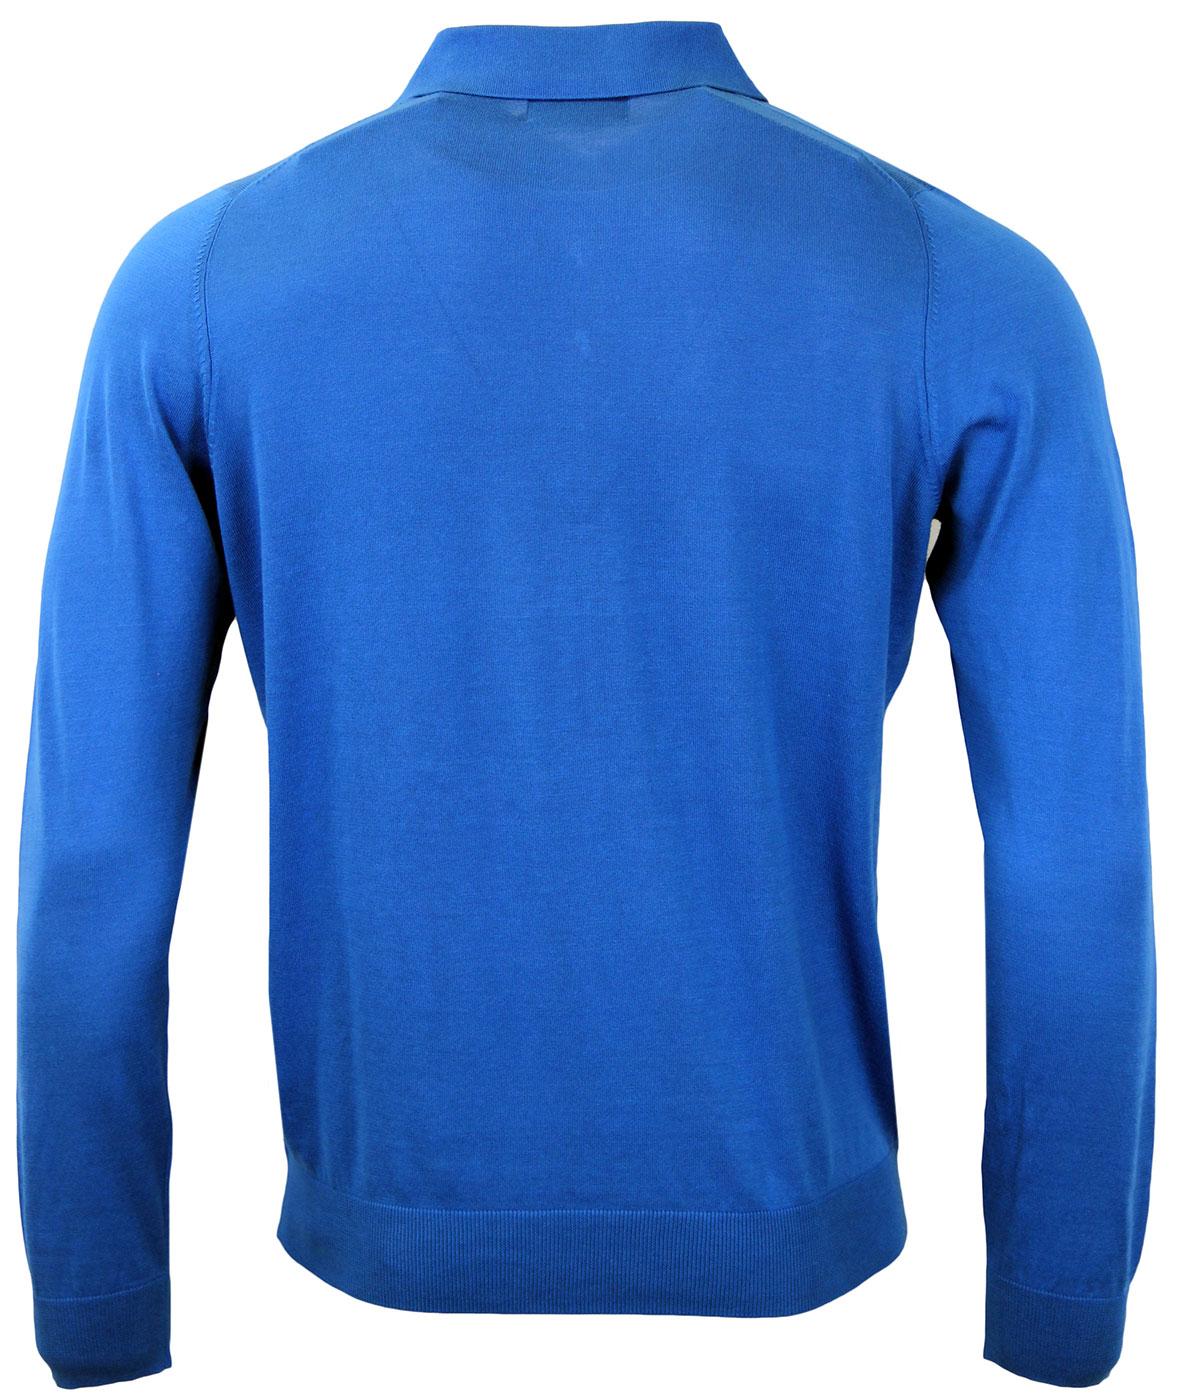 ALAN PAINE Sudbrooke Retro 60s Mod Fine Knit Polo Shirt Blue